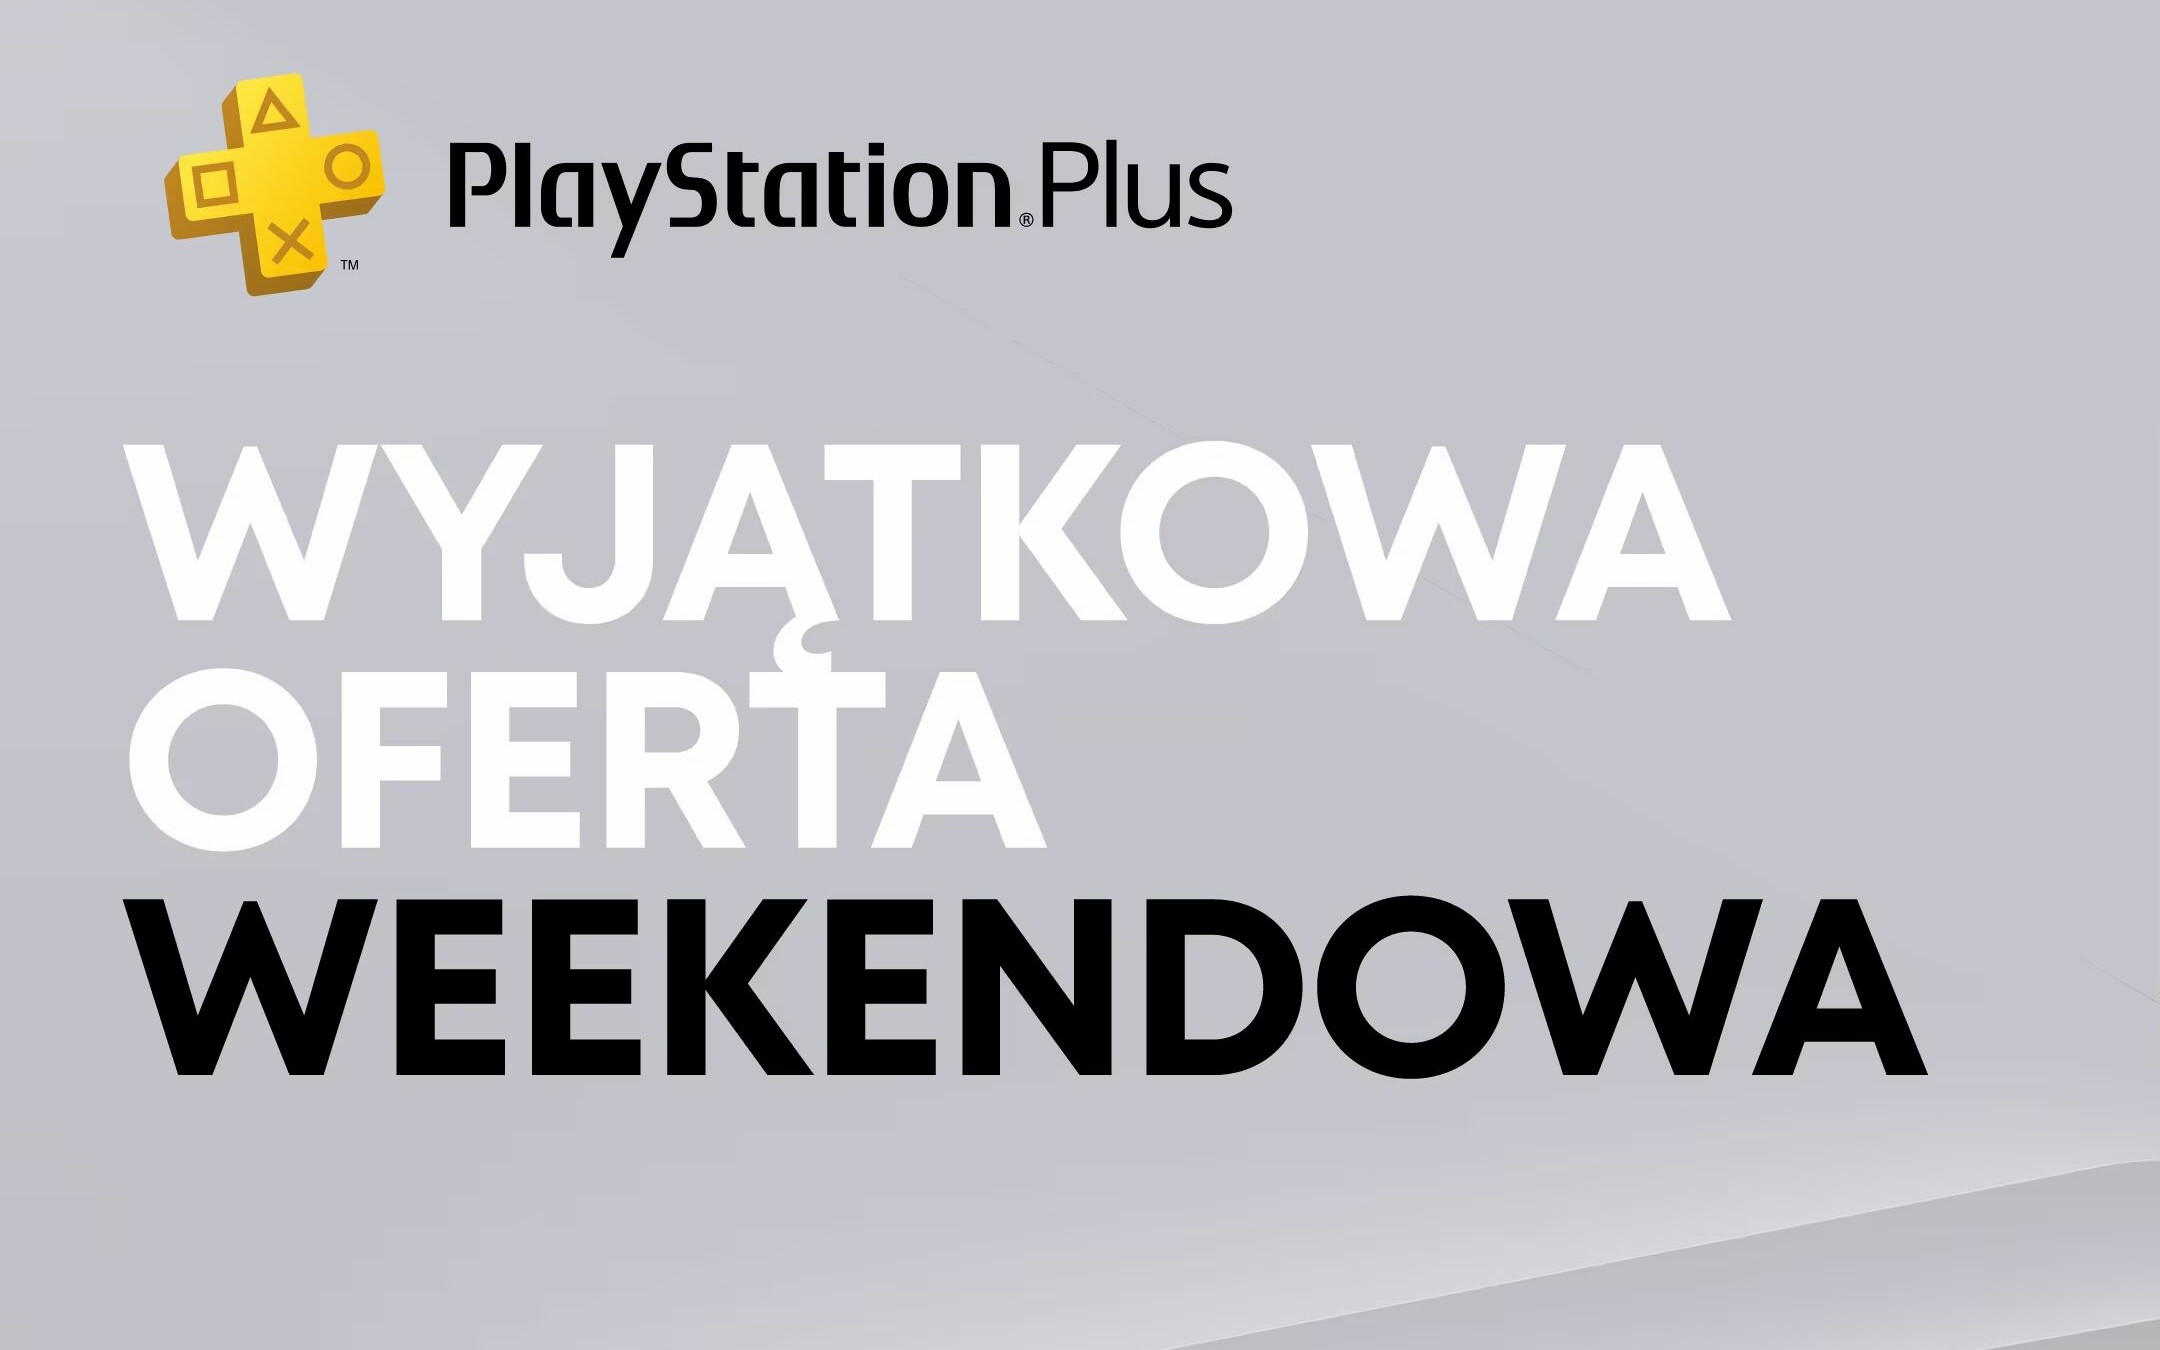 Venta de juegos de PS5 y PS4.  Oferta exclusiva de fin de semana para títulos AAA de alto perfil en PS Store